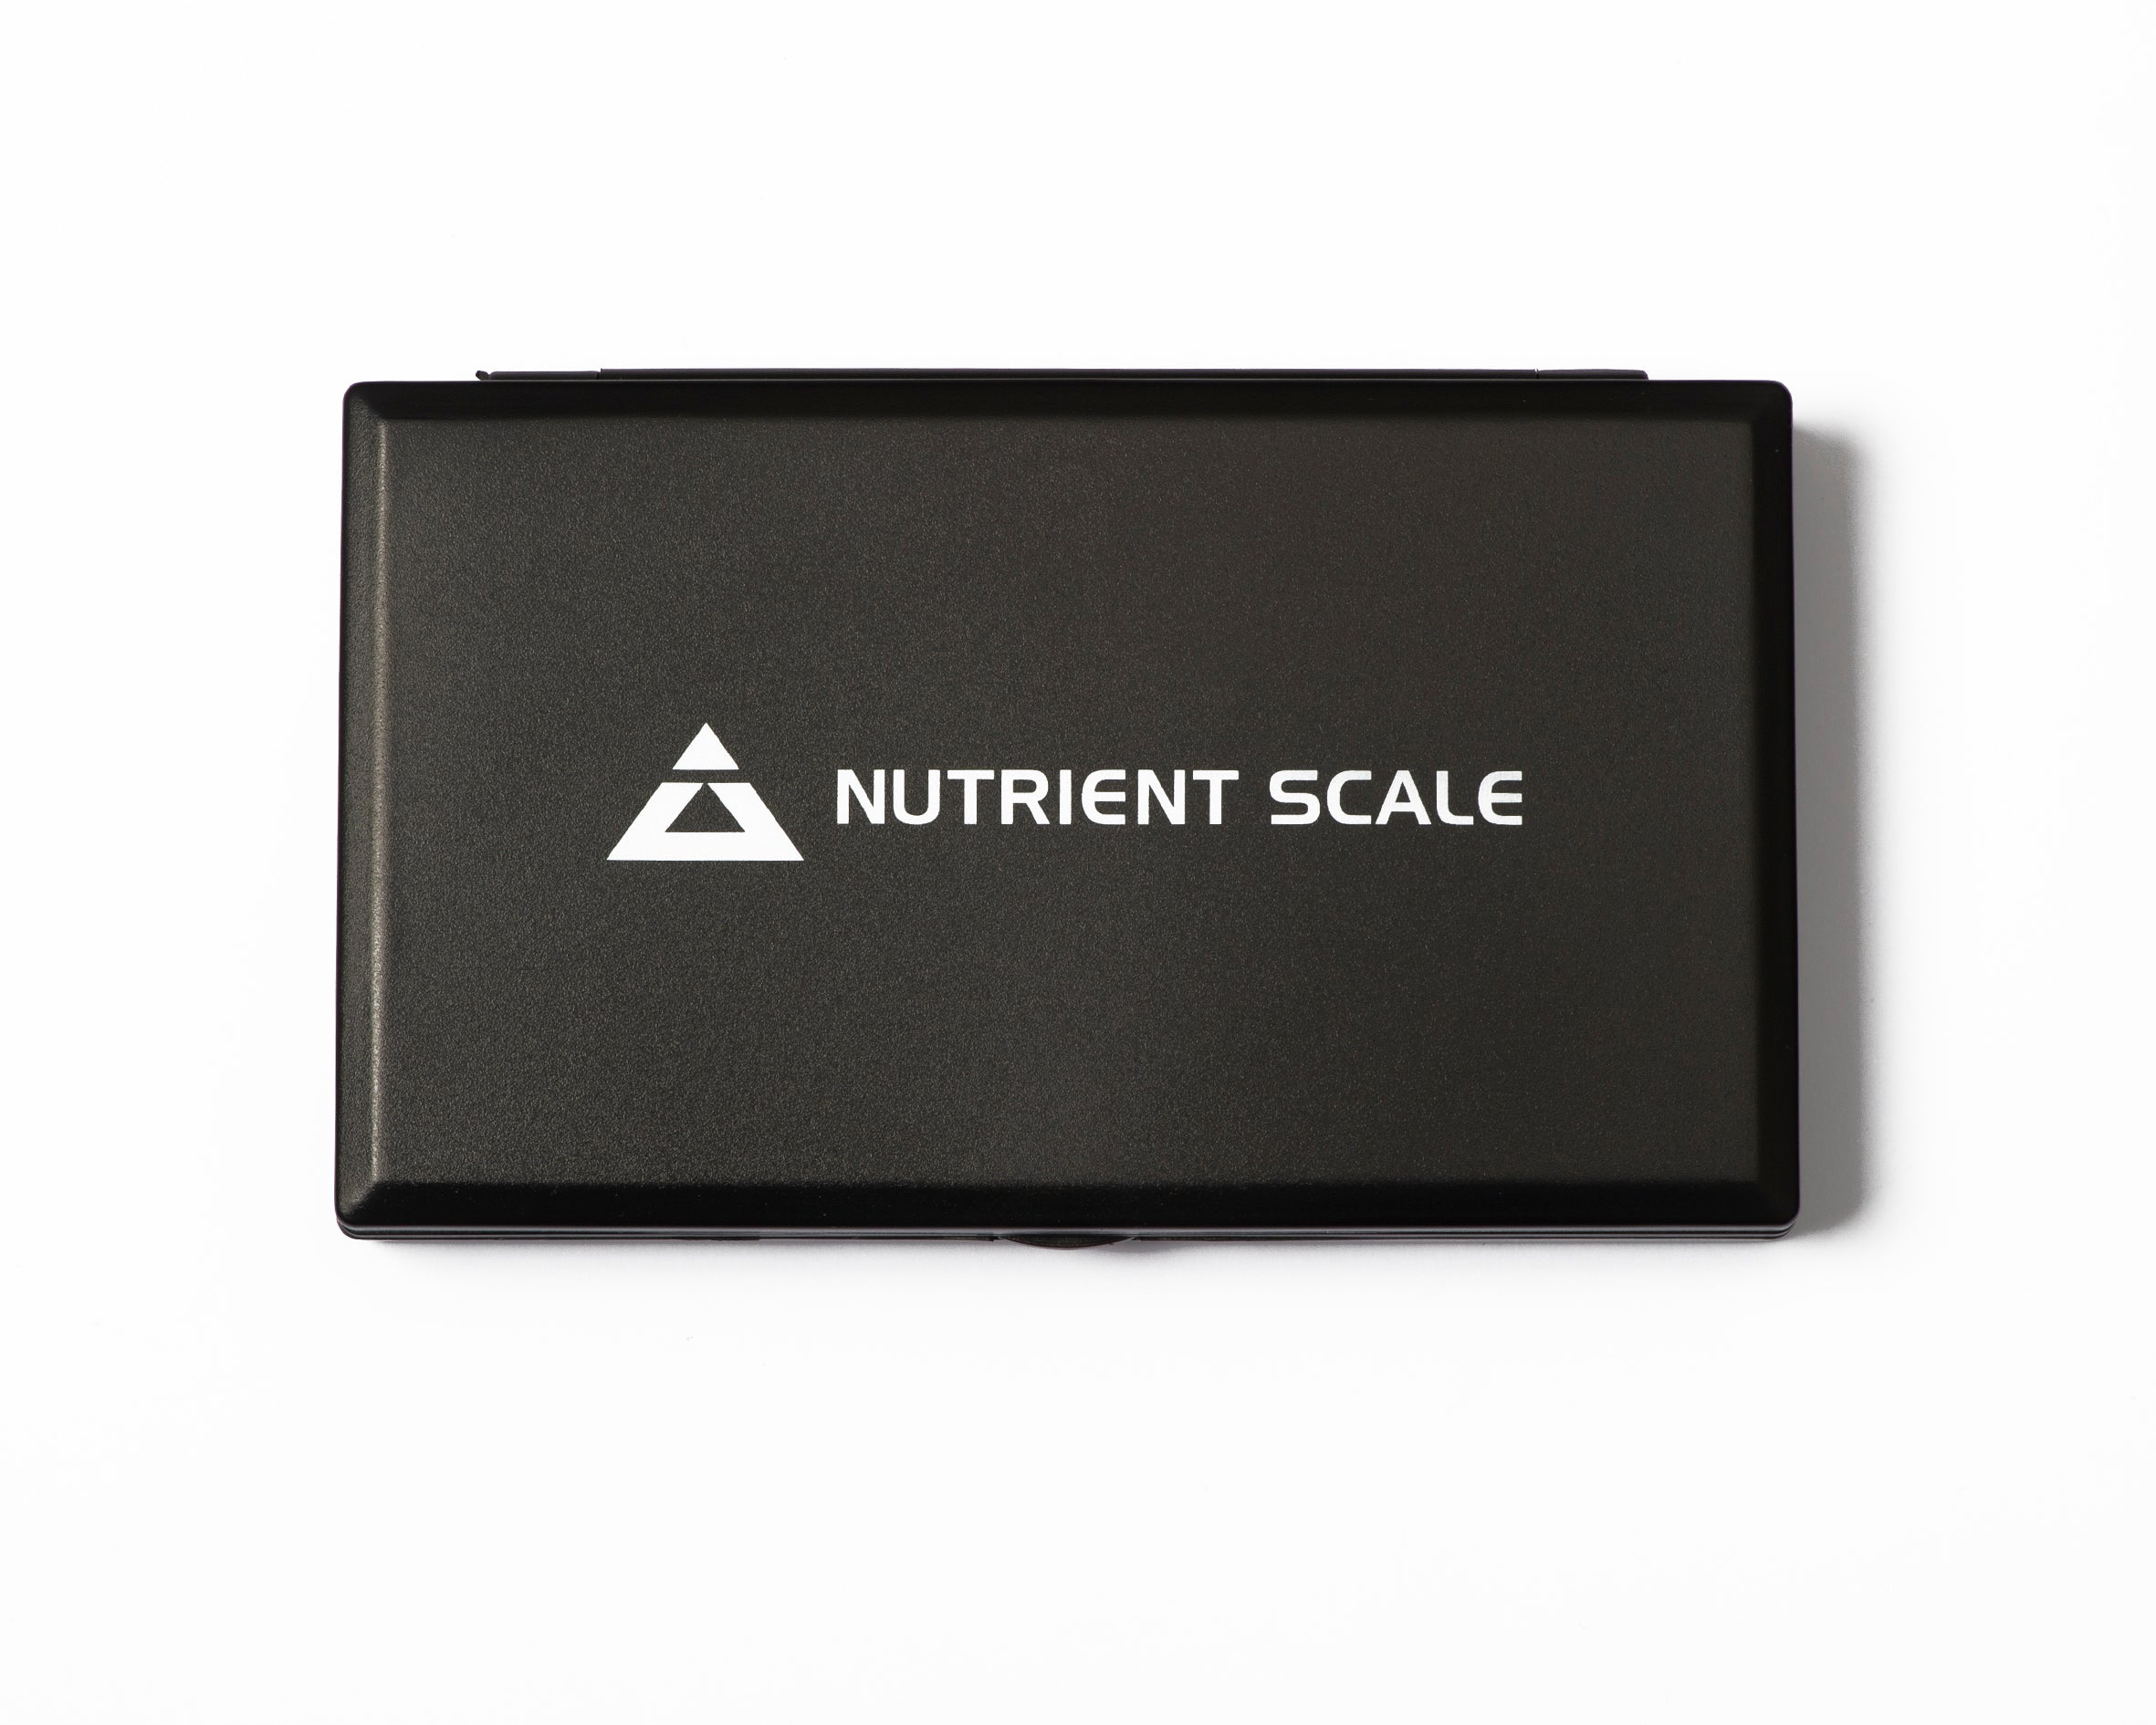 NUTRI-1000 On Balance Nutrient Miniscale 1000g x 0.1 g